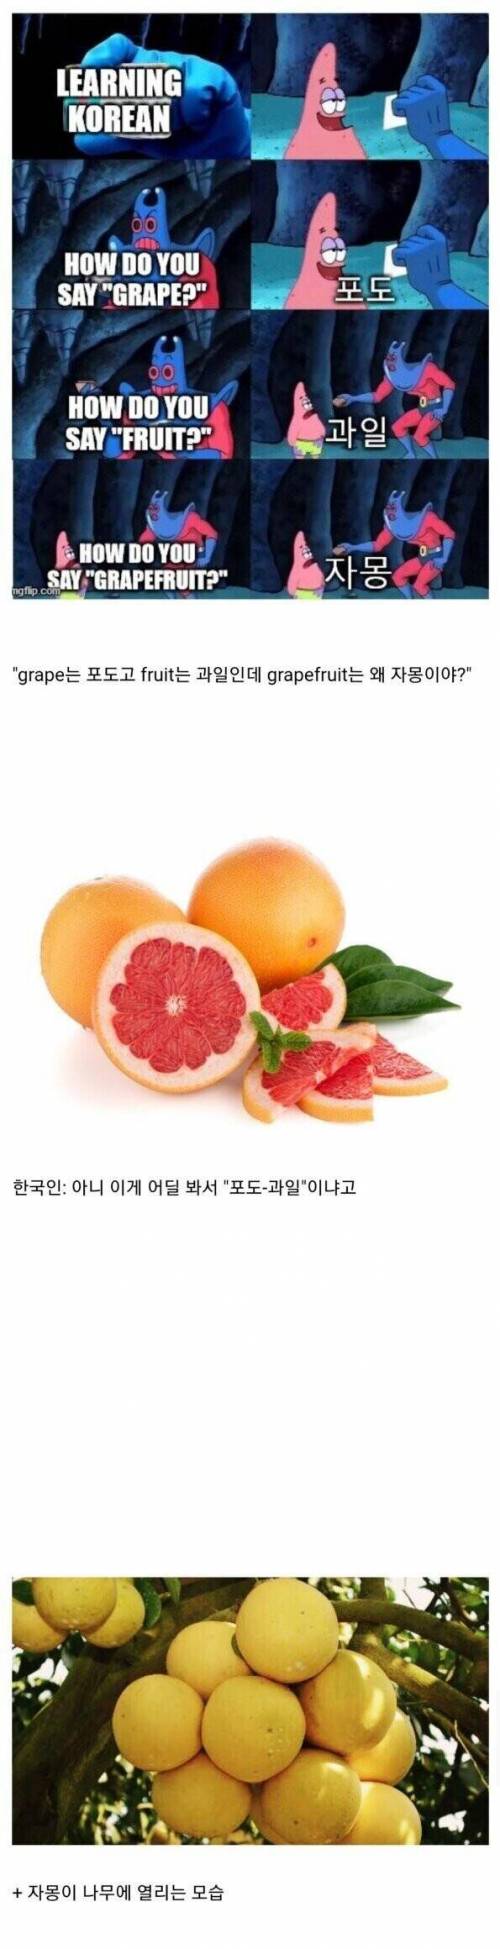 12 이상하게 번역된 과일.jpg